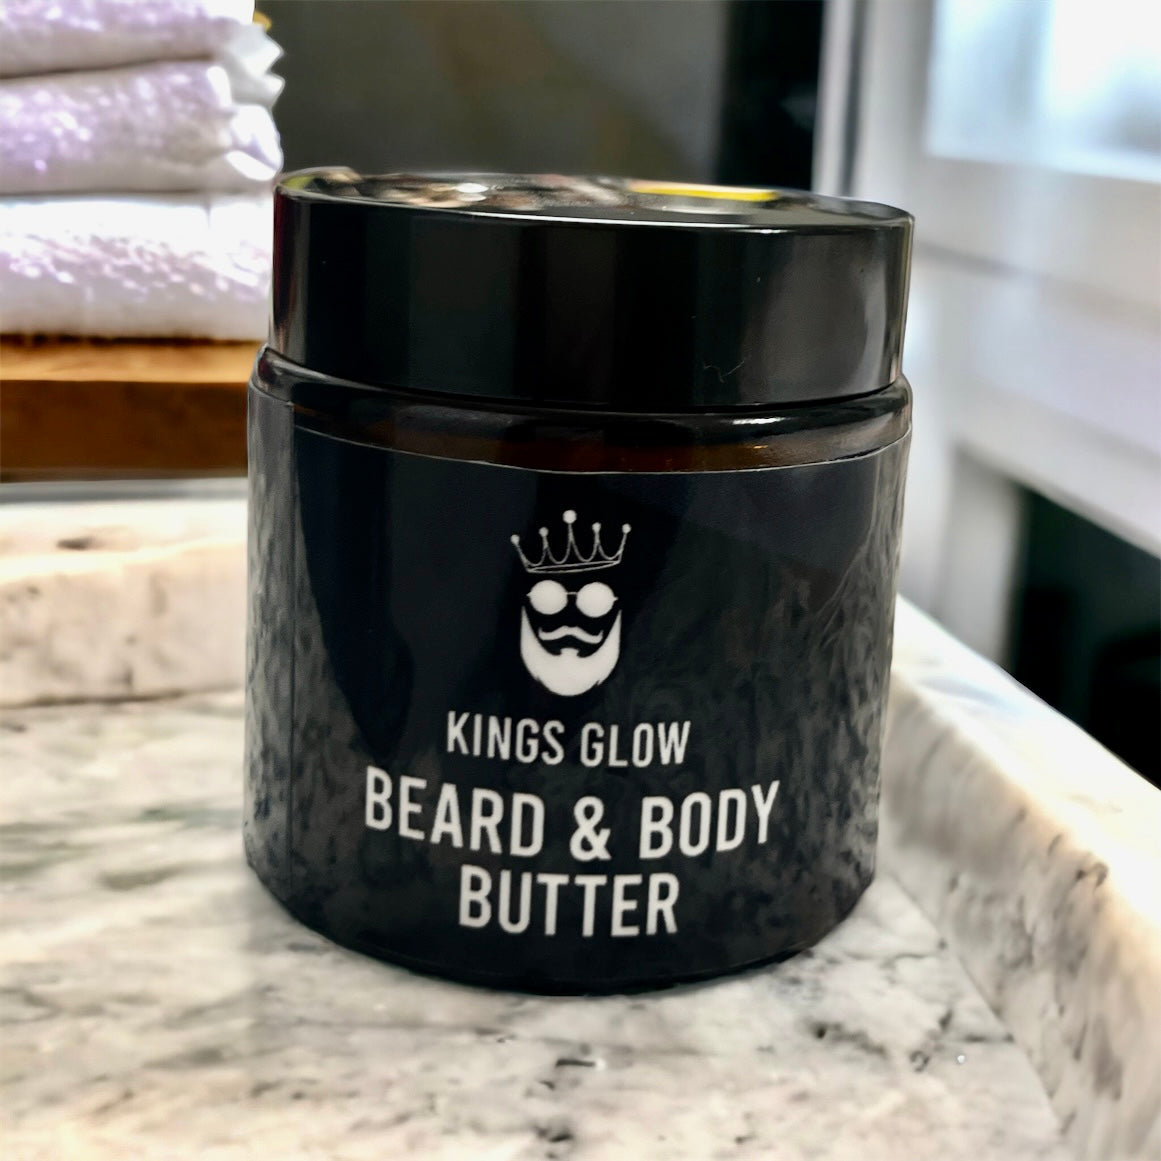 Kings Glow Beard & Body Butter